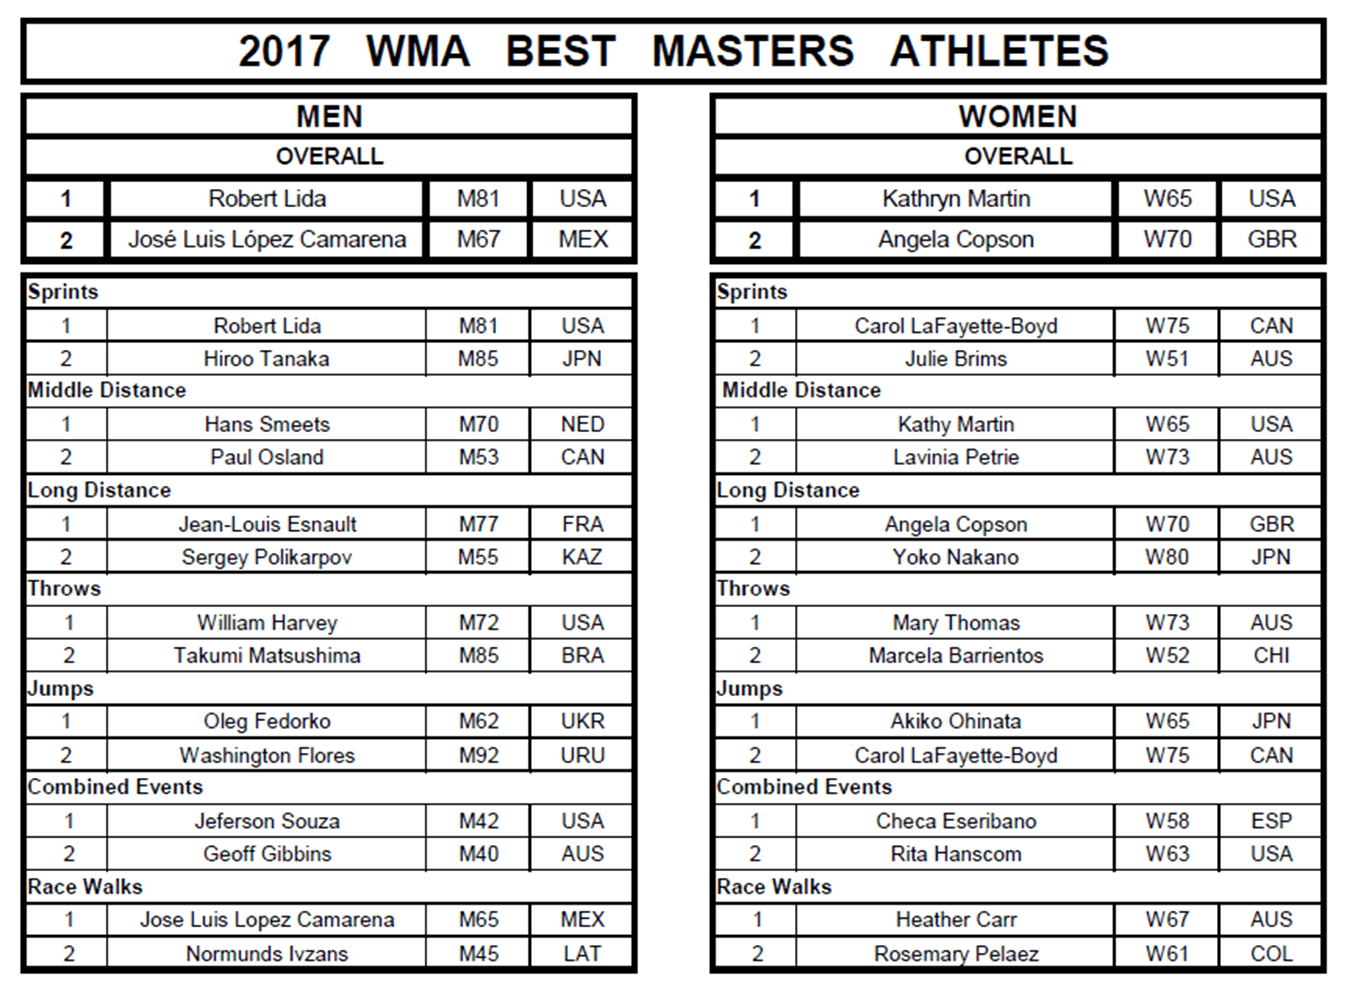 2017 Athletes of the Year, World Masters Athletics